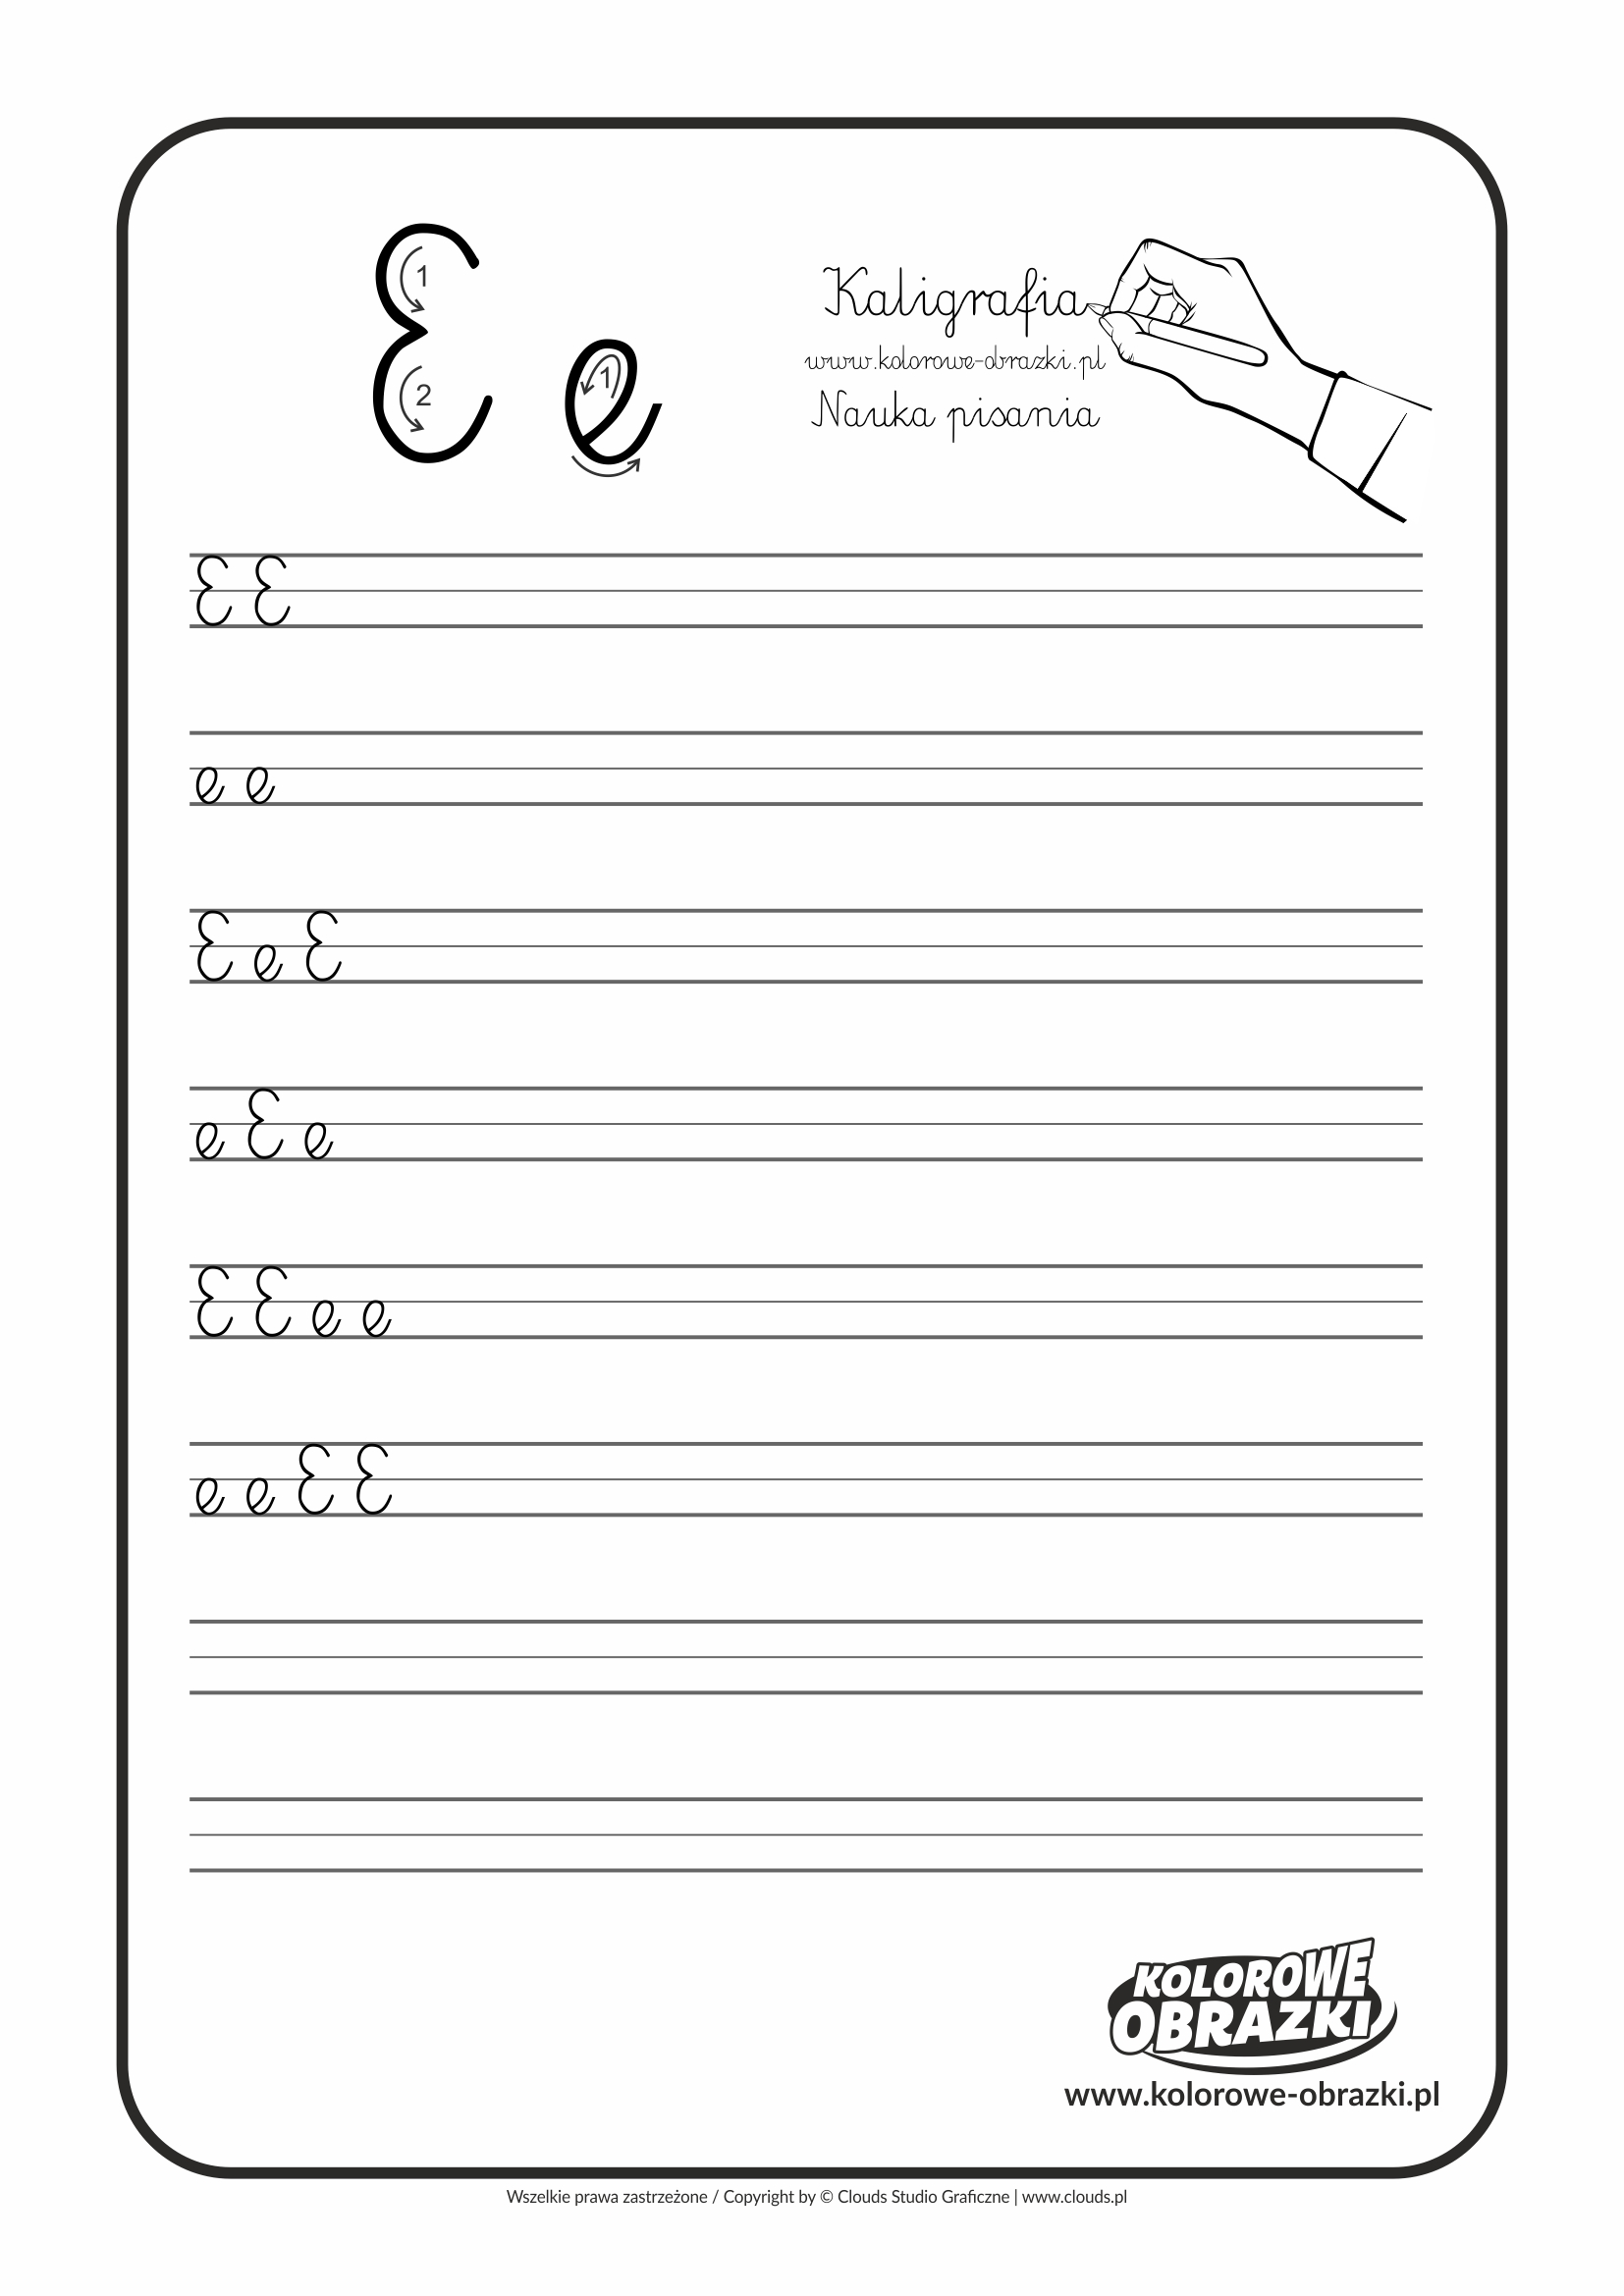 Kaligrafia dla dzieci - Ćwiczenia kaligraficzne / Litera E. Nauka pisania litery E